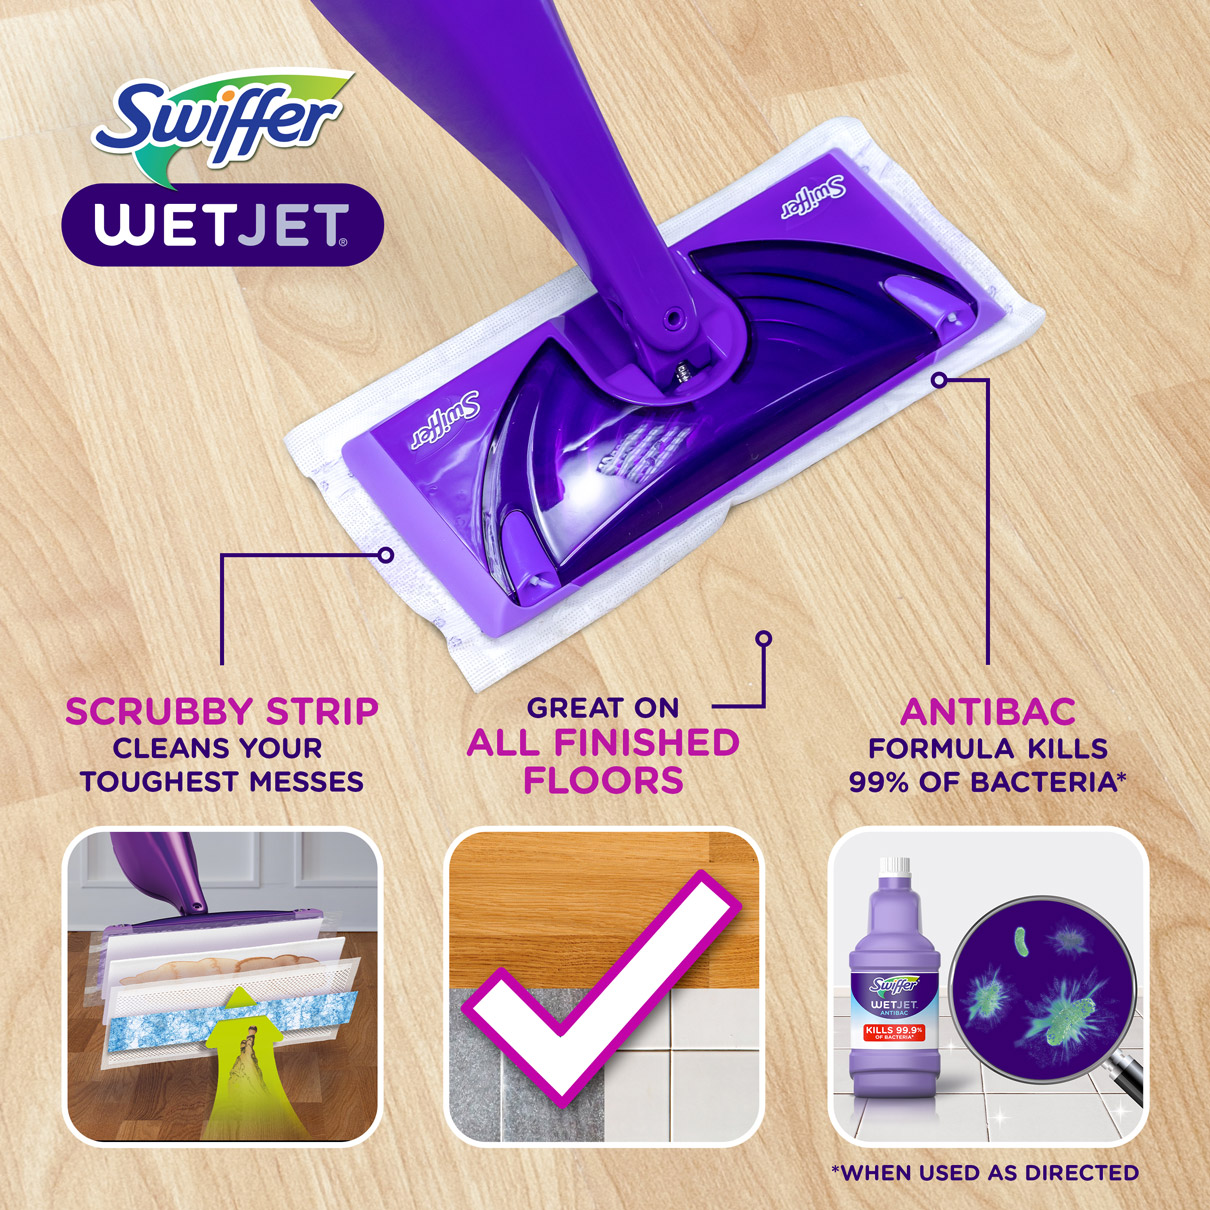 Swiffer® WetJet™ Heavy Duty Mopping Pad Refill